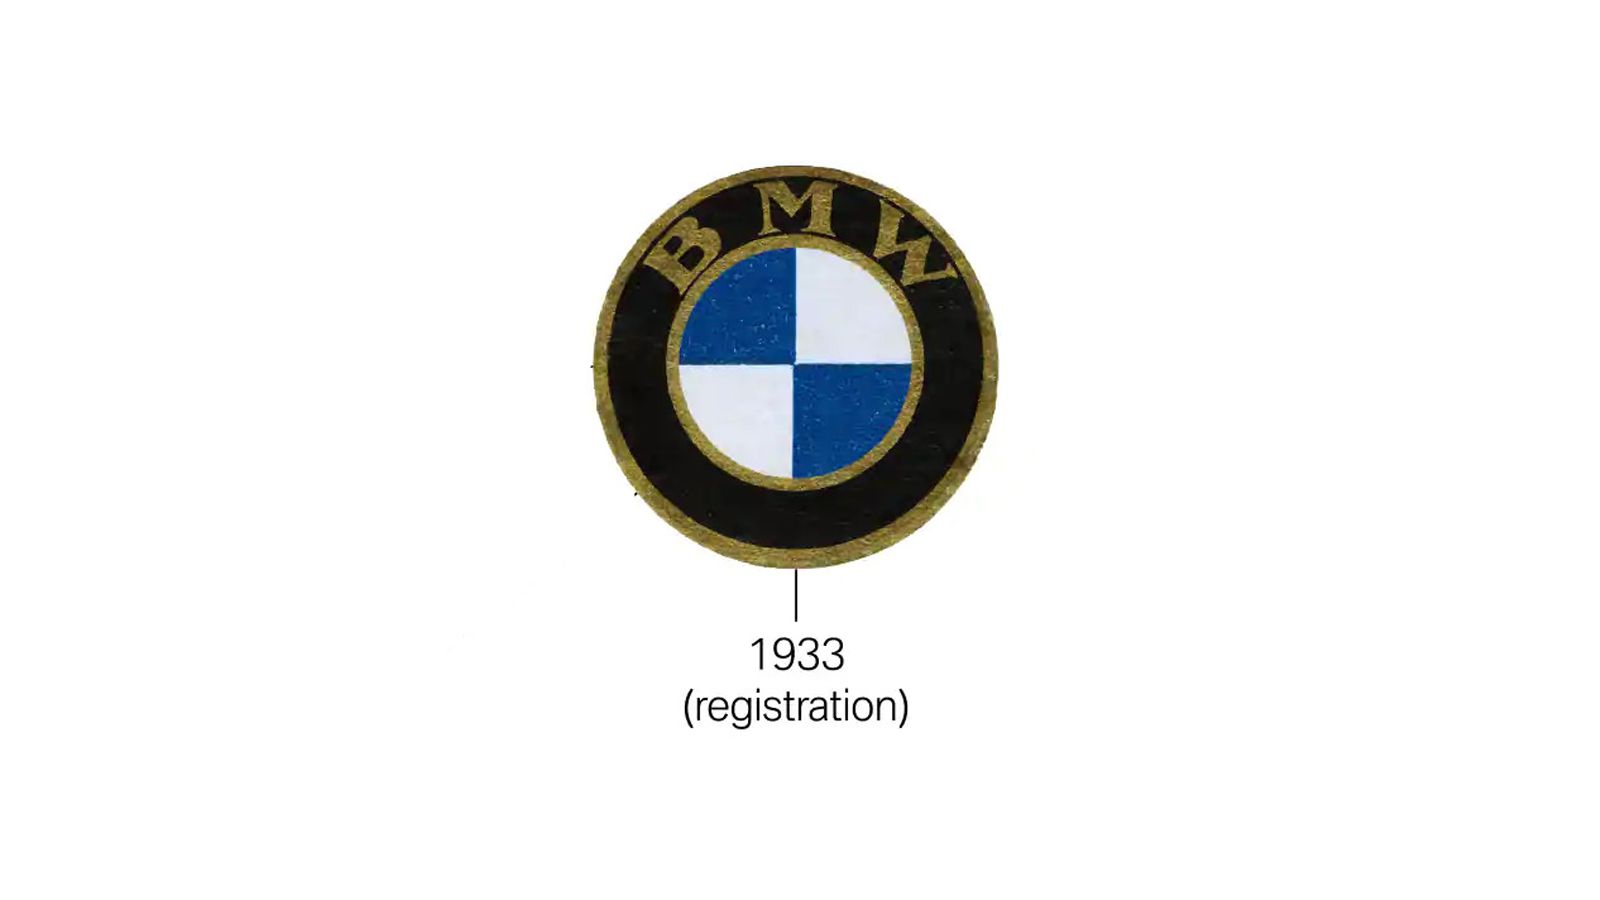 BMW Logo: Meaning, Evolution, PNG, Transparent Logo